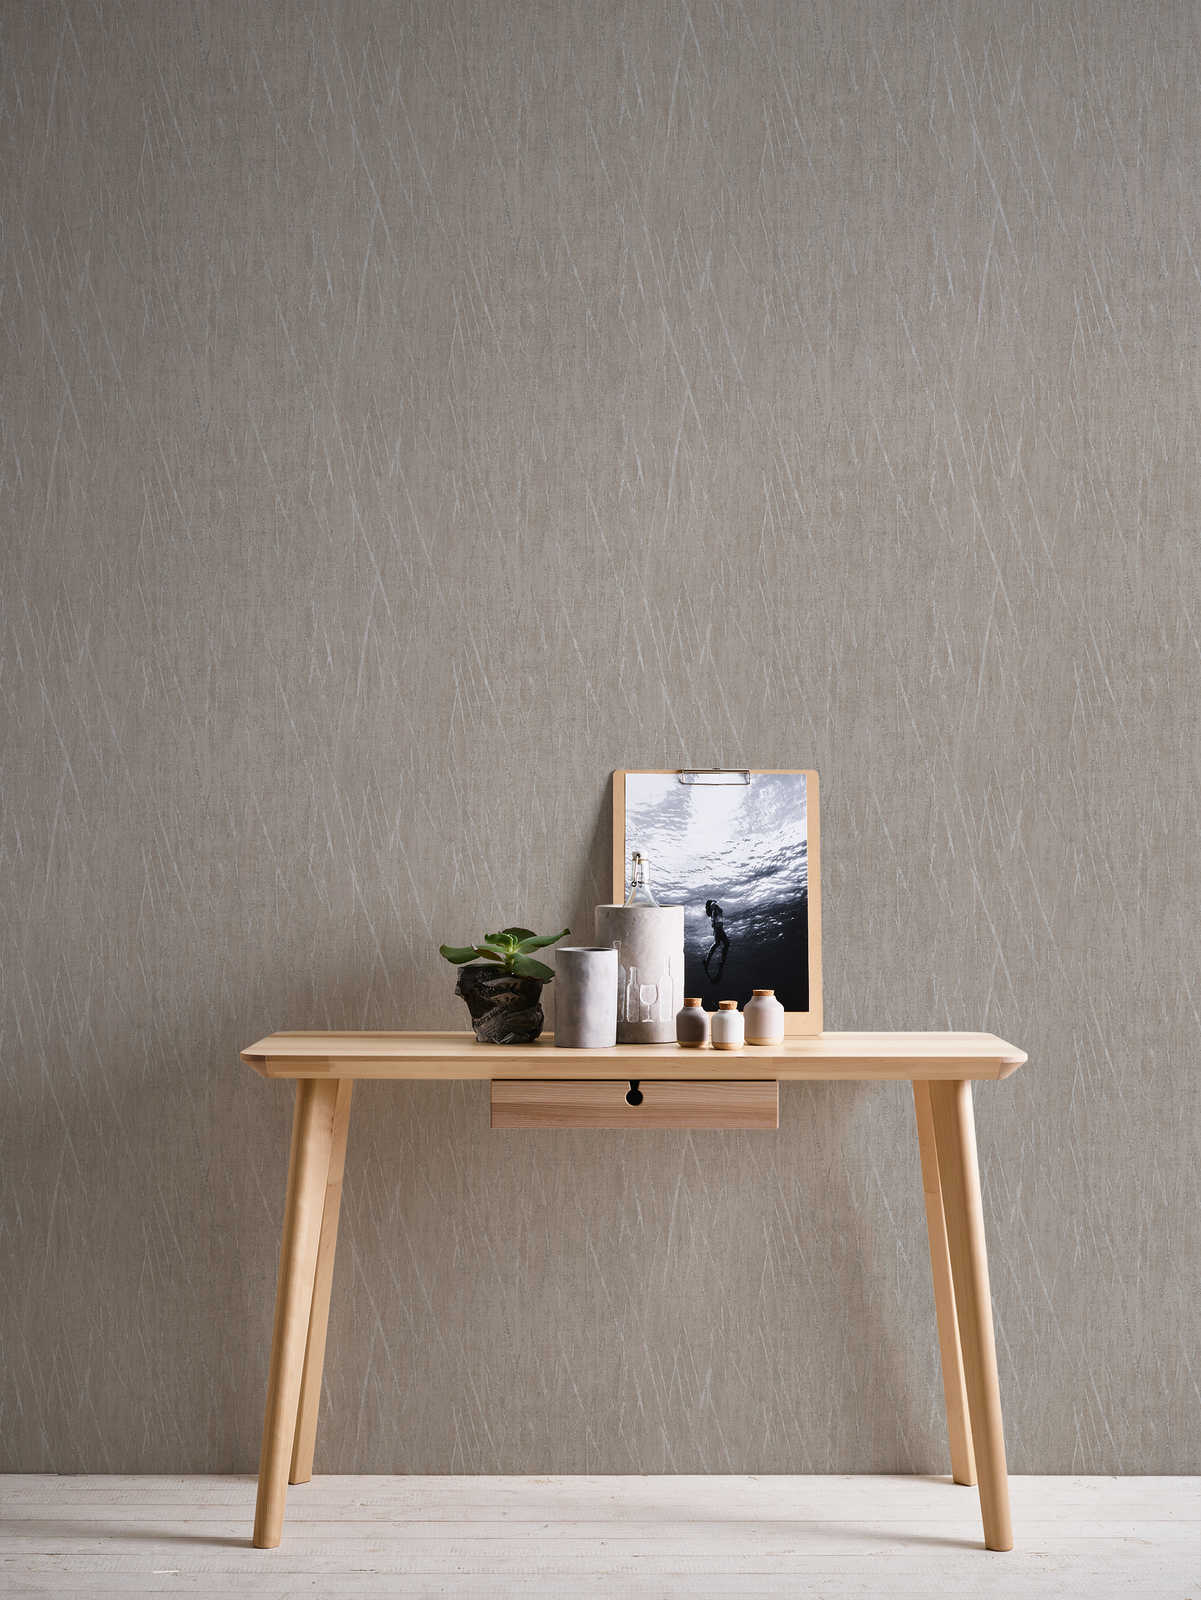             Scandinavian wallpaper with metallic design - beige, grey
        